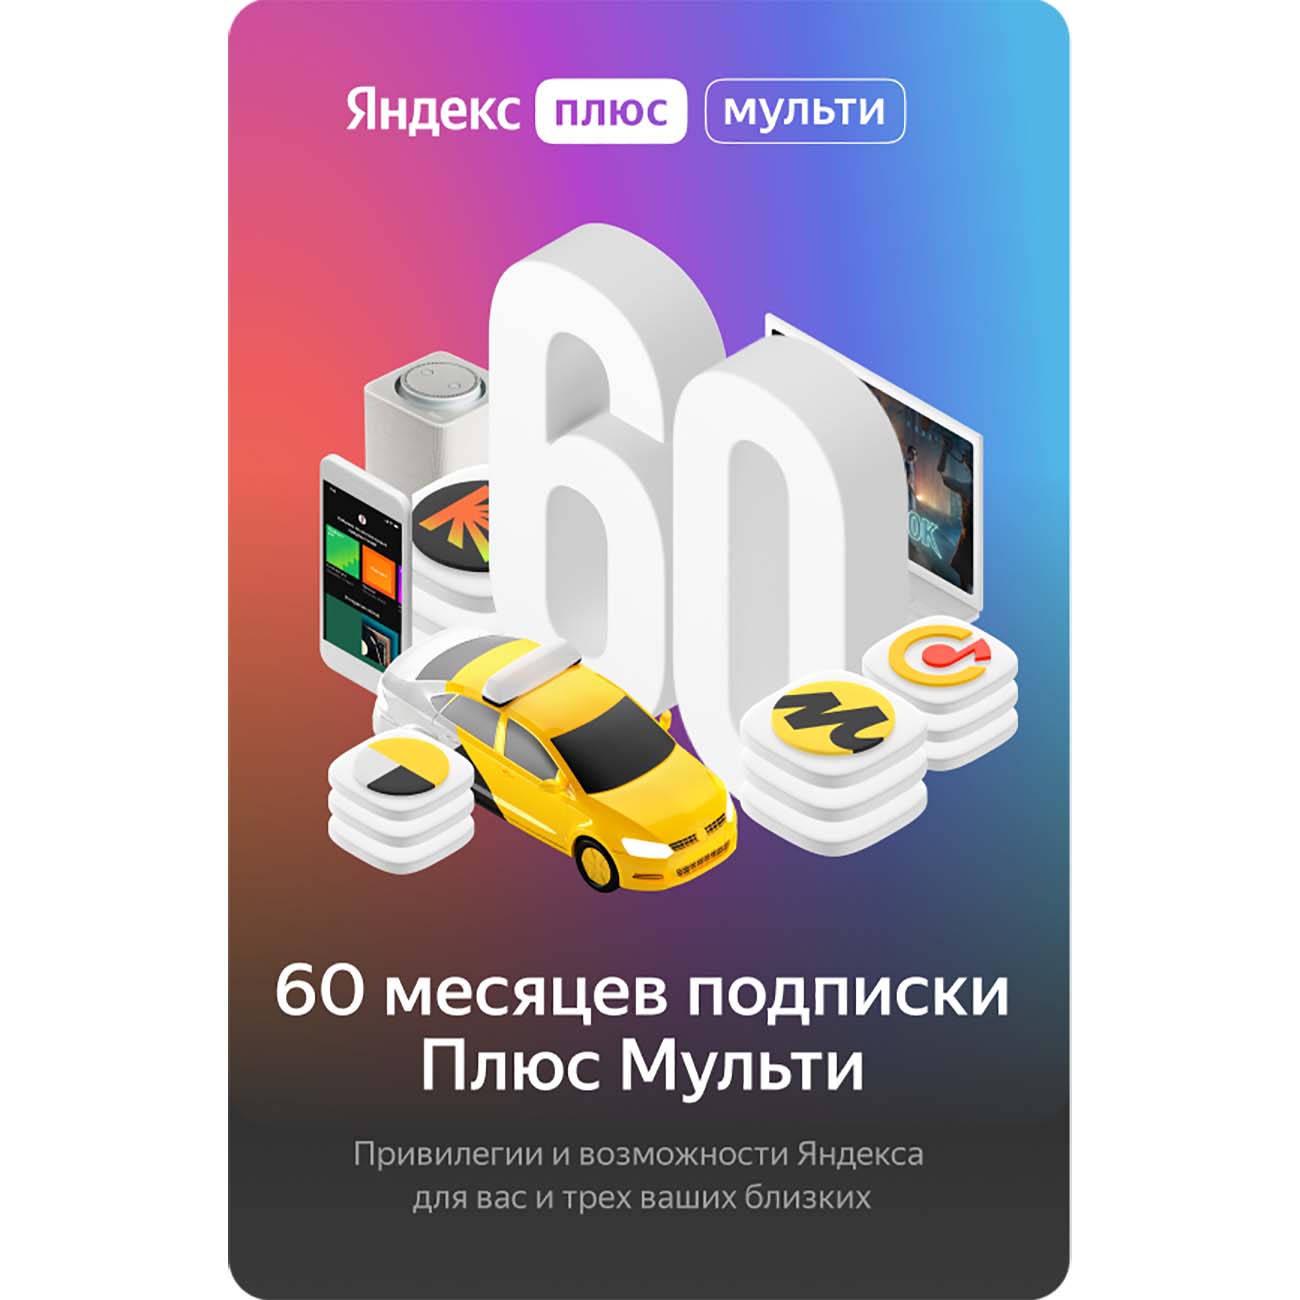 Подписка Яндекс.Плюс Мульти (60 месяцев)